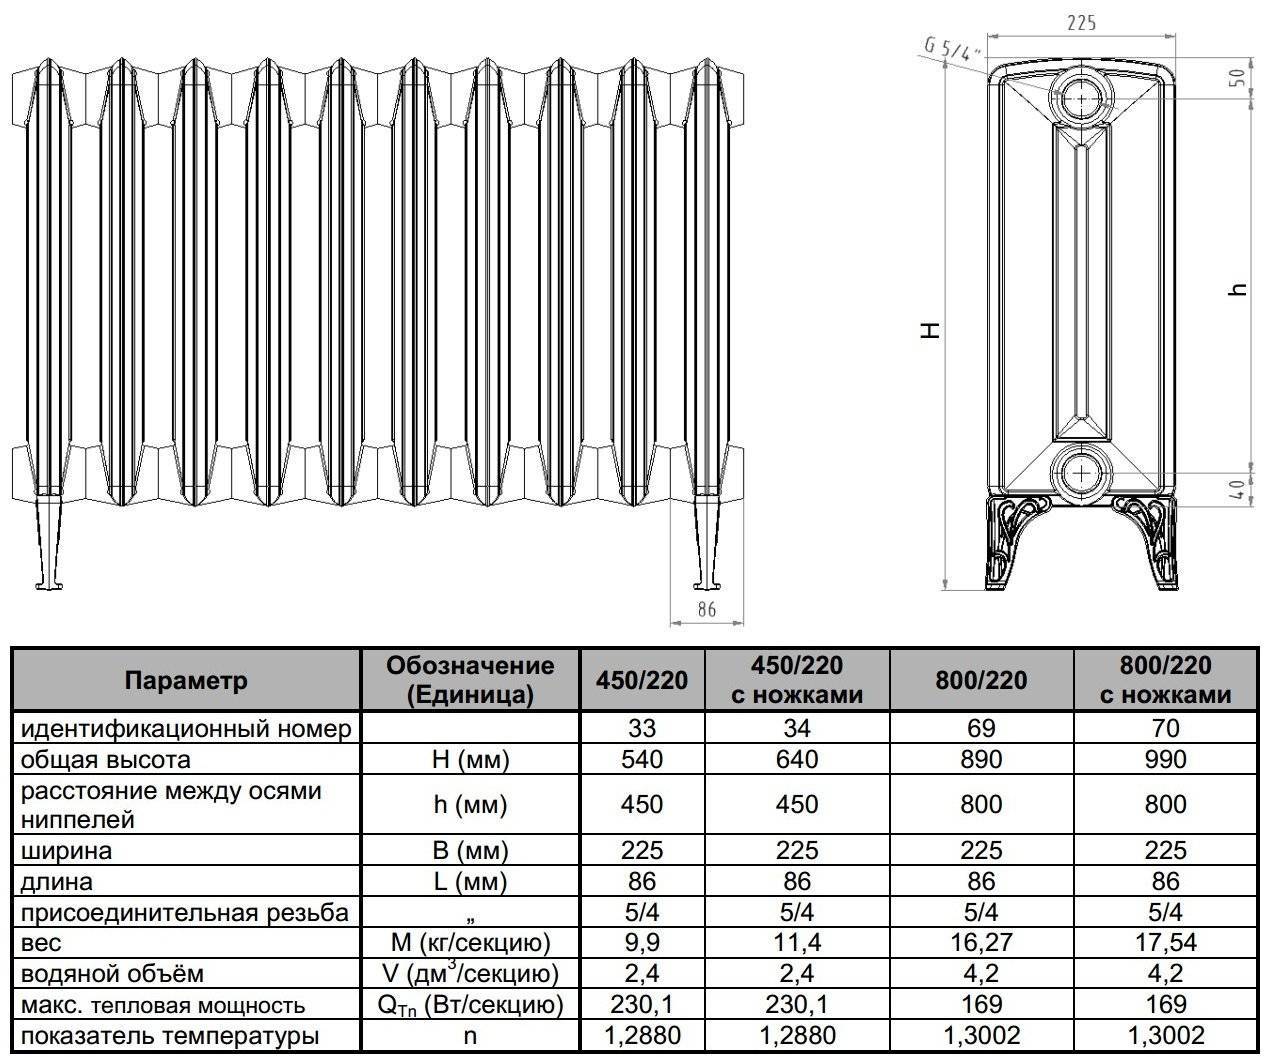 Чугунные радиаторы отопления мс 140 500 технические характеристики и основные правила монтажа,вес радиатора чугунного, 1 секции чугунной батареи,сколько весит чугунная батарея 10 секций,размеры чугунных радиаторов,радиатор чугунный,